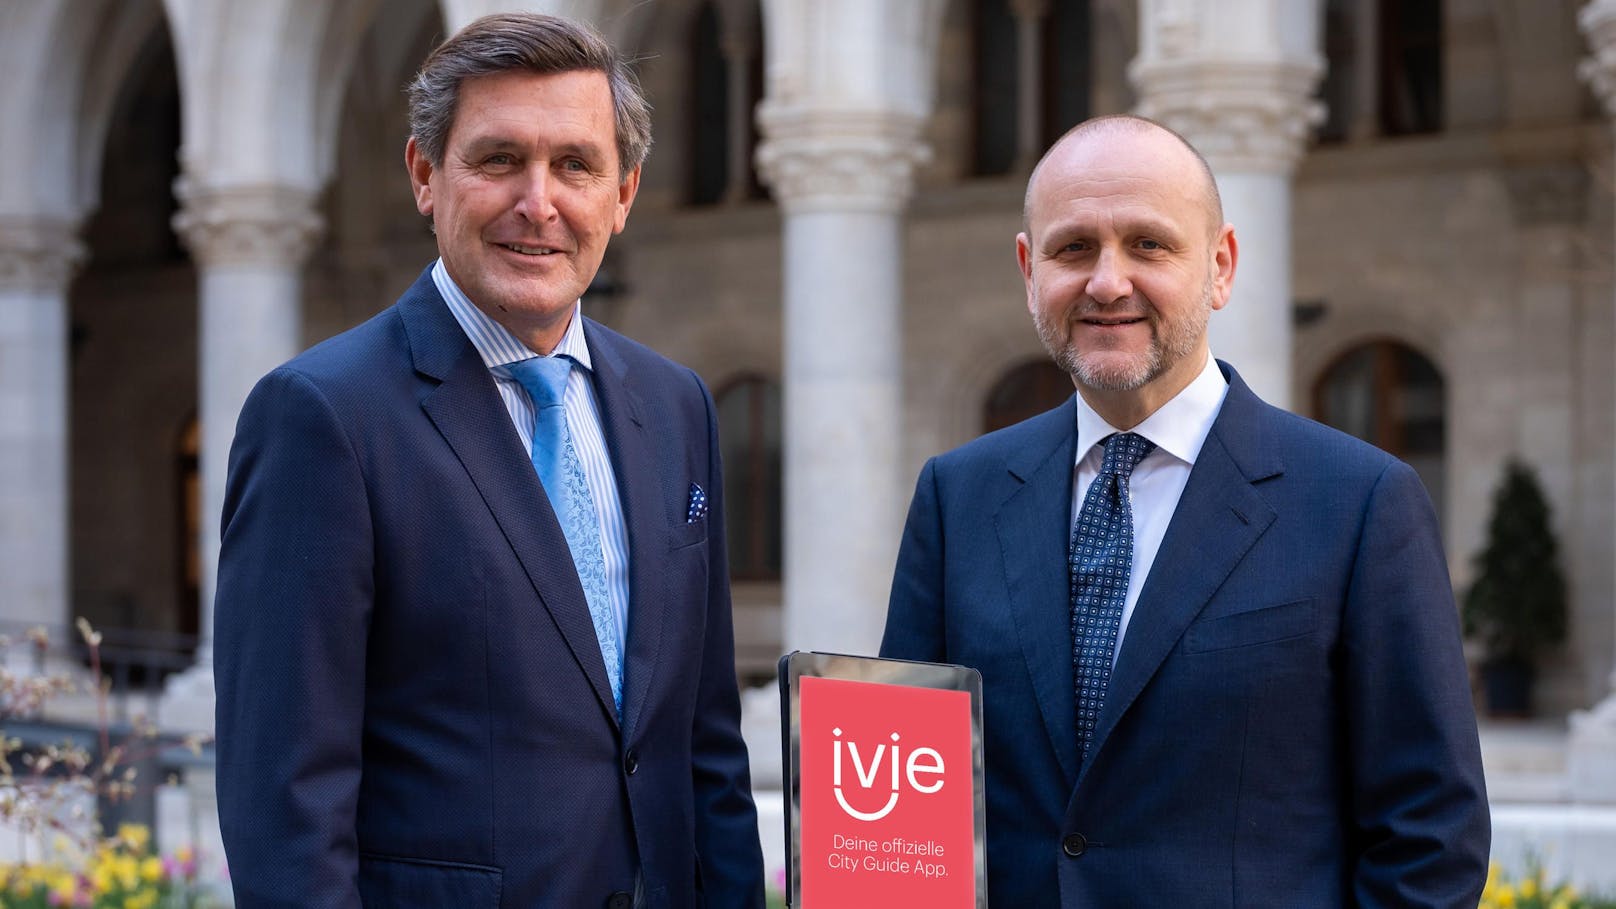 Wirtschaftsstadtrat Peter Hanke und Tourismus-Direktor Norbert Kettner freuen sich über den großen Erfolg der "ivie"-App.